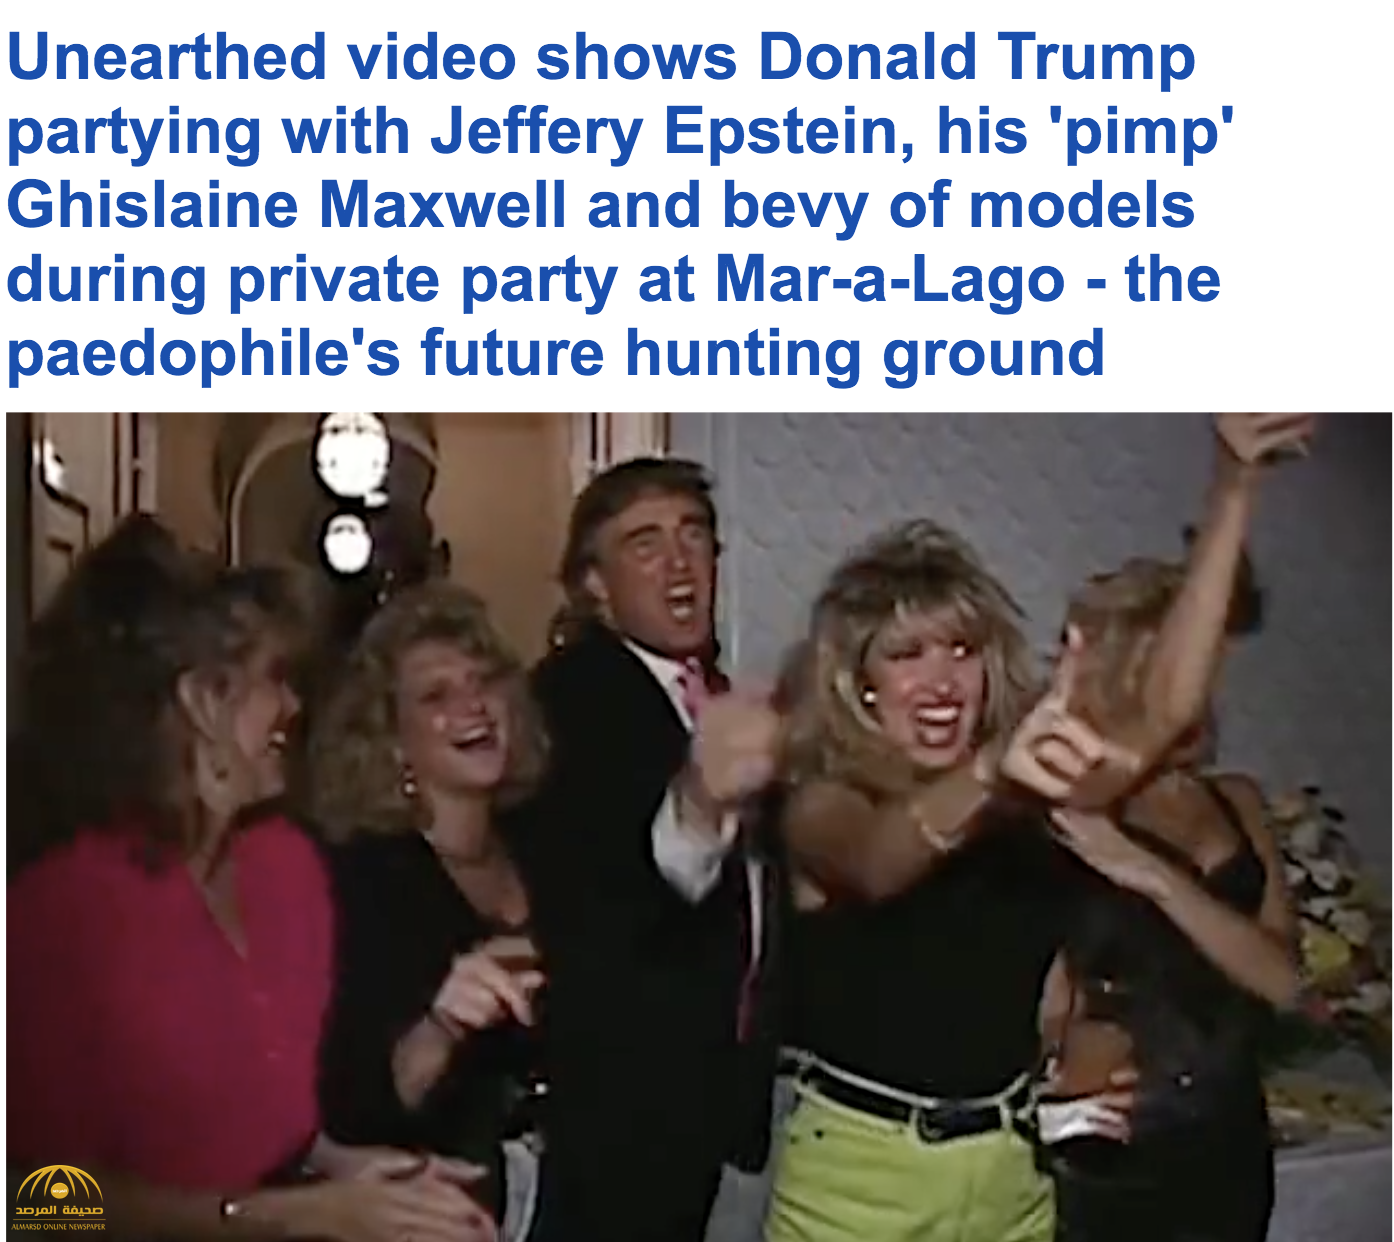 شاهد فيديو مسرب لـ "ترامب" و صديقه المتهم باستغلال القاصرات جنسياً في حفل راقص مع فتيات عام 1992